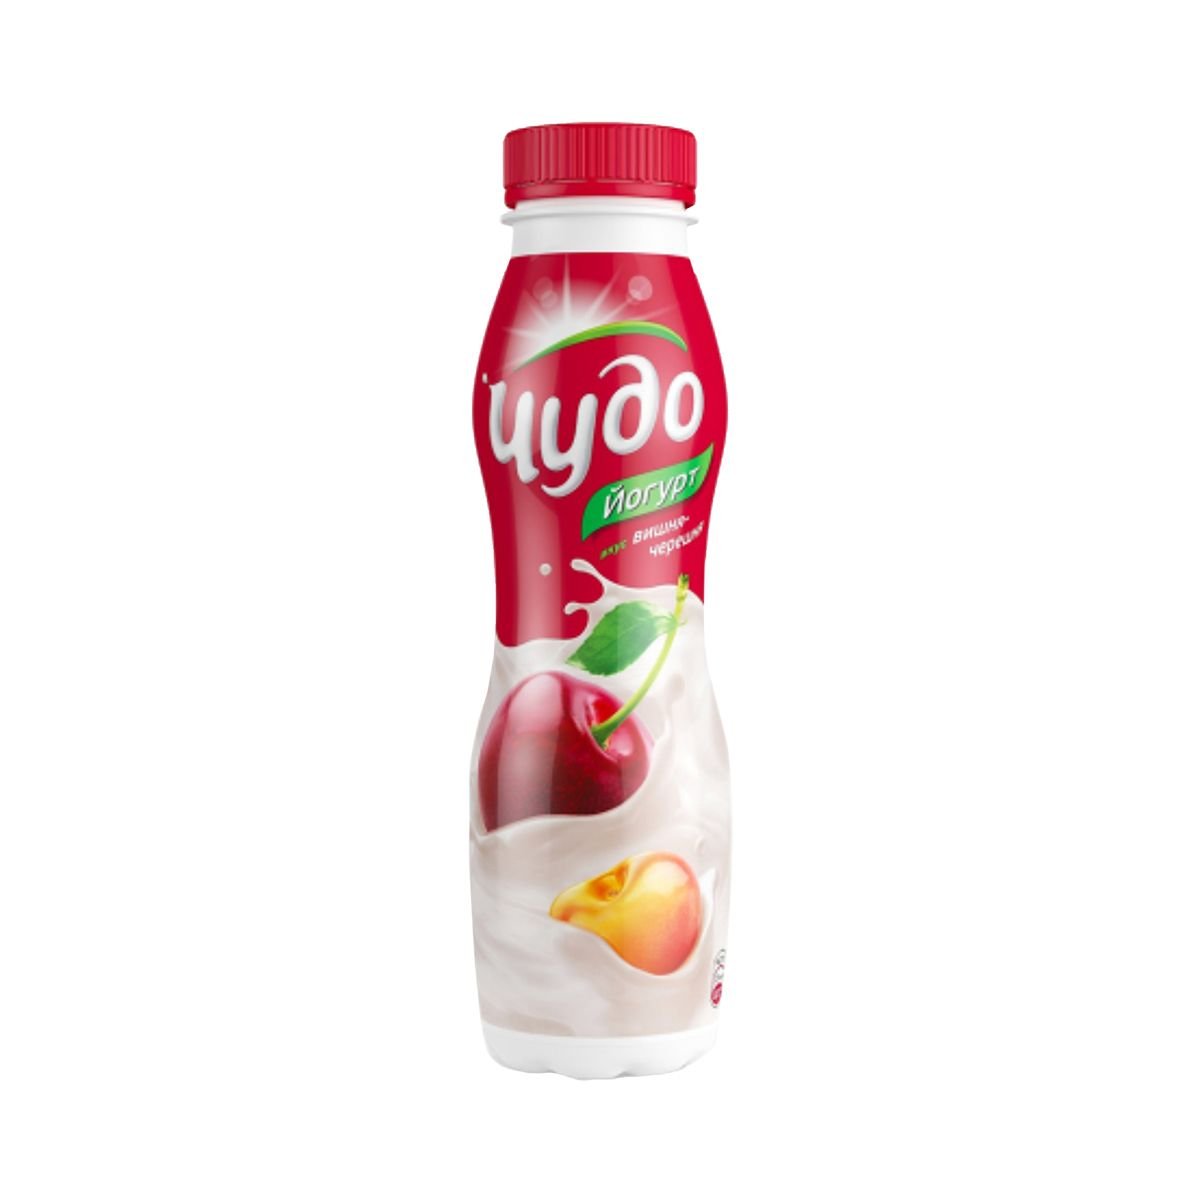 Фото питьевого йогурта. Питьевой йогурт чудо персик-манго-дыня 2.4%, 270 г. Йогурт пит. "Чудо" персик-абрикос 2,4% 270г. Йогурт питьевой чудо 270 гр. Йогурт чудо 270г вишня-черешня.